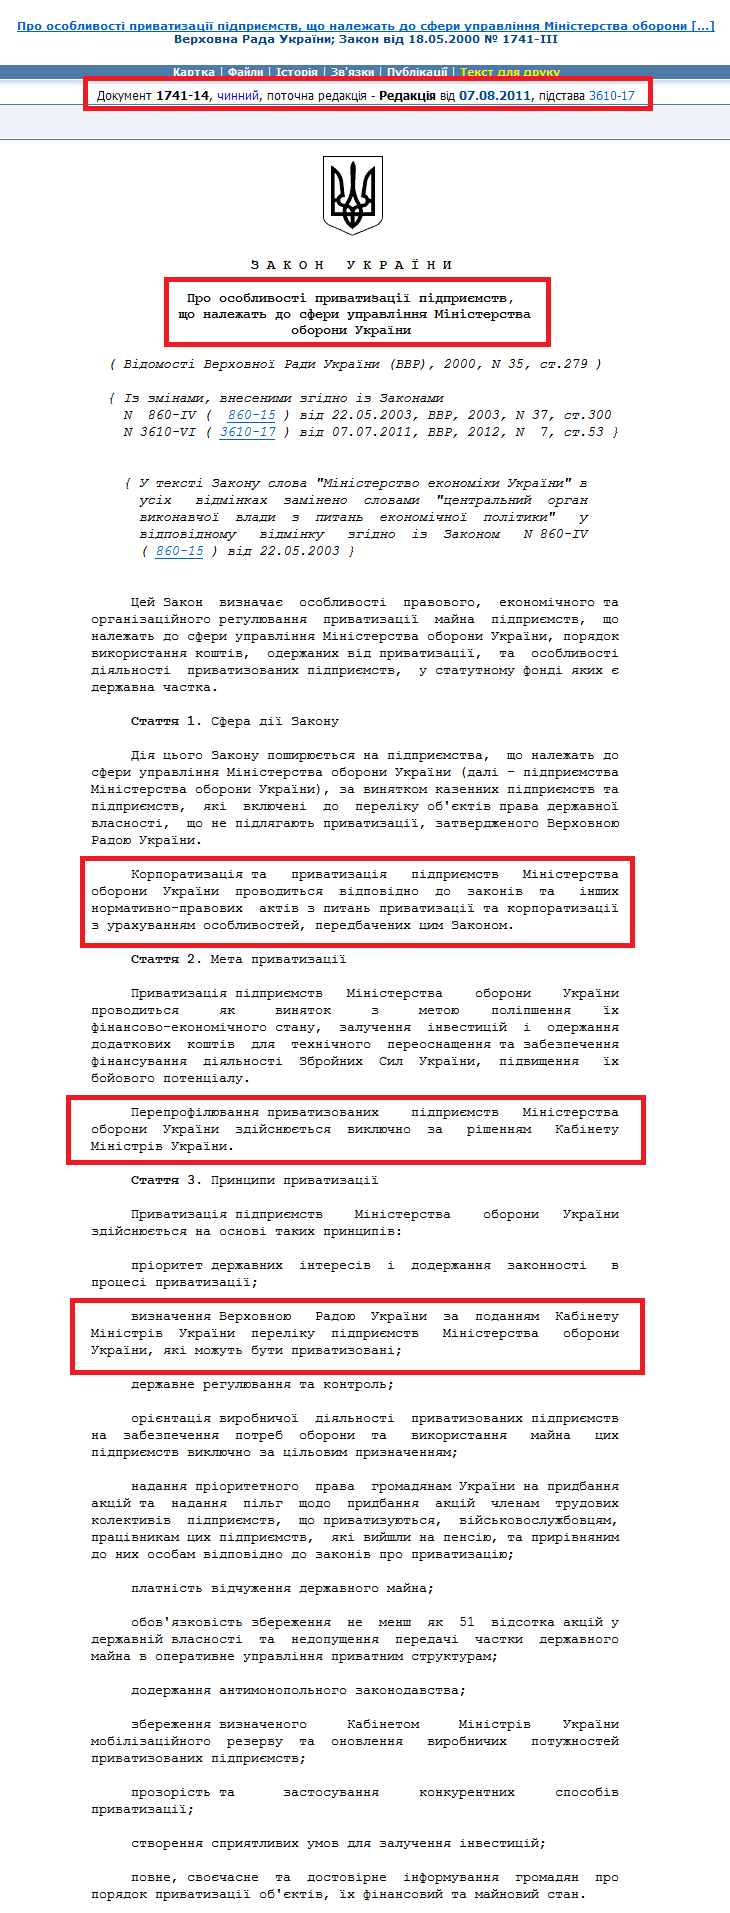 http://zakon2.rada.gov.ua/laws/show/1741-14